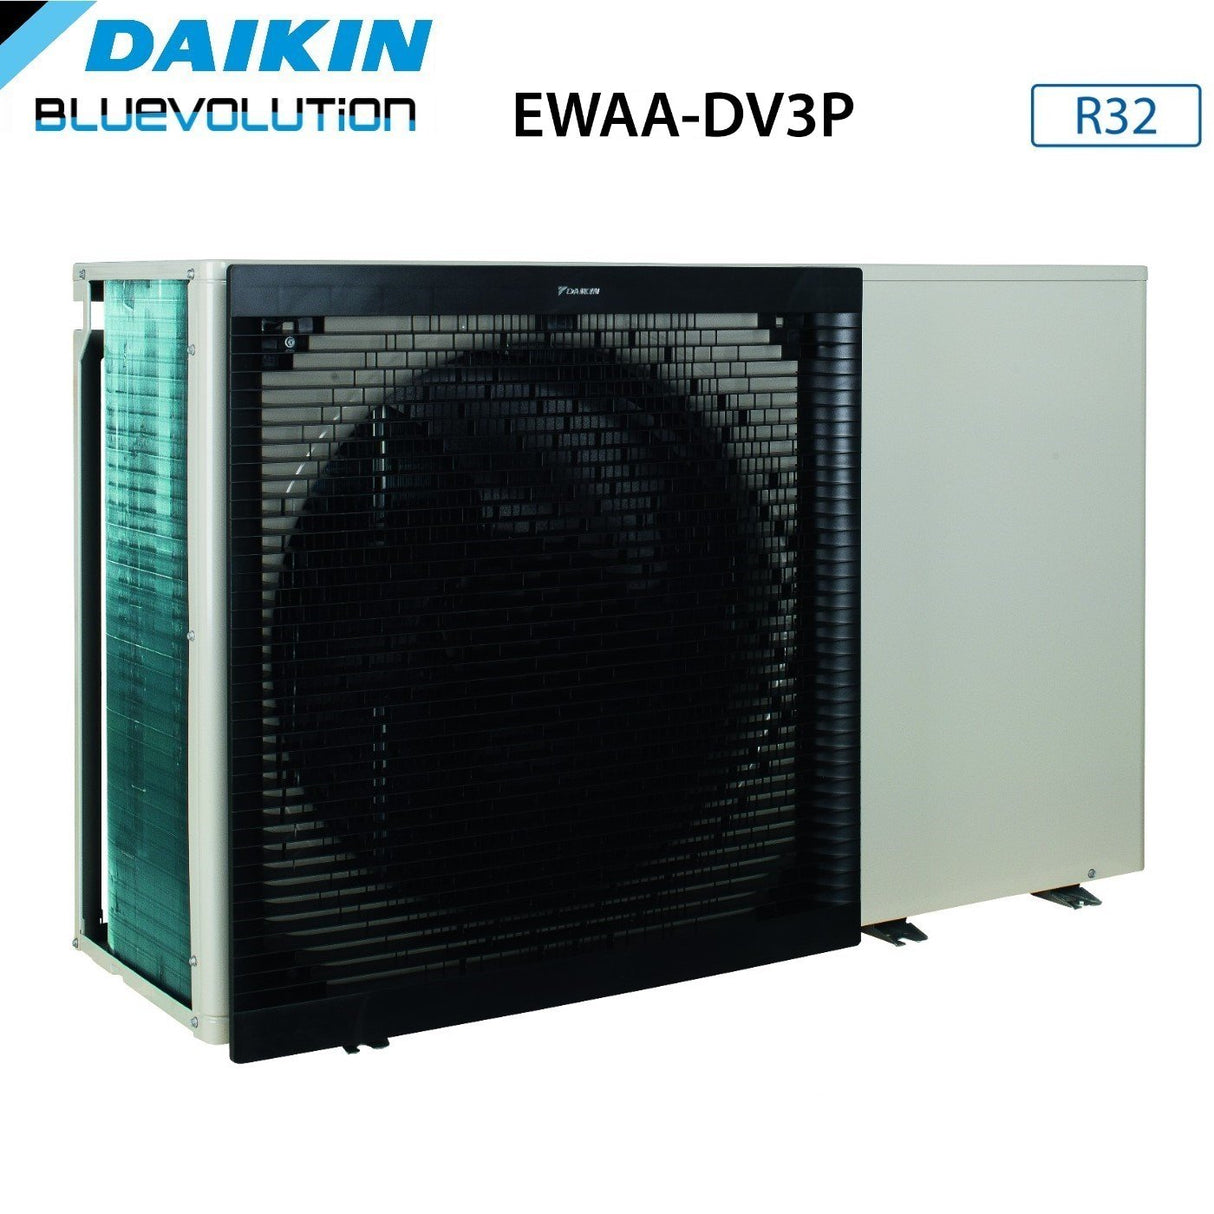 immagine-3-daikin-mini-chiller-daikin-solo-raffreddamento-inverter-aria-acqua-ewaa-014dv3p-da-128-kw-monofase-r-32